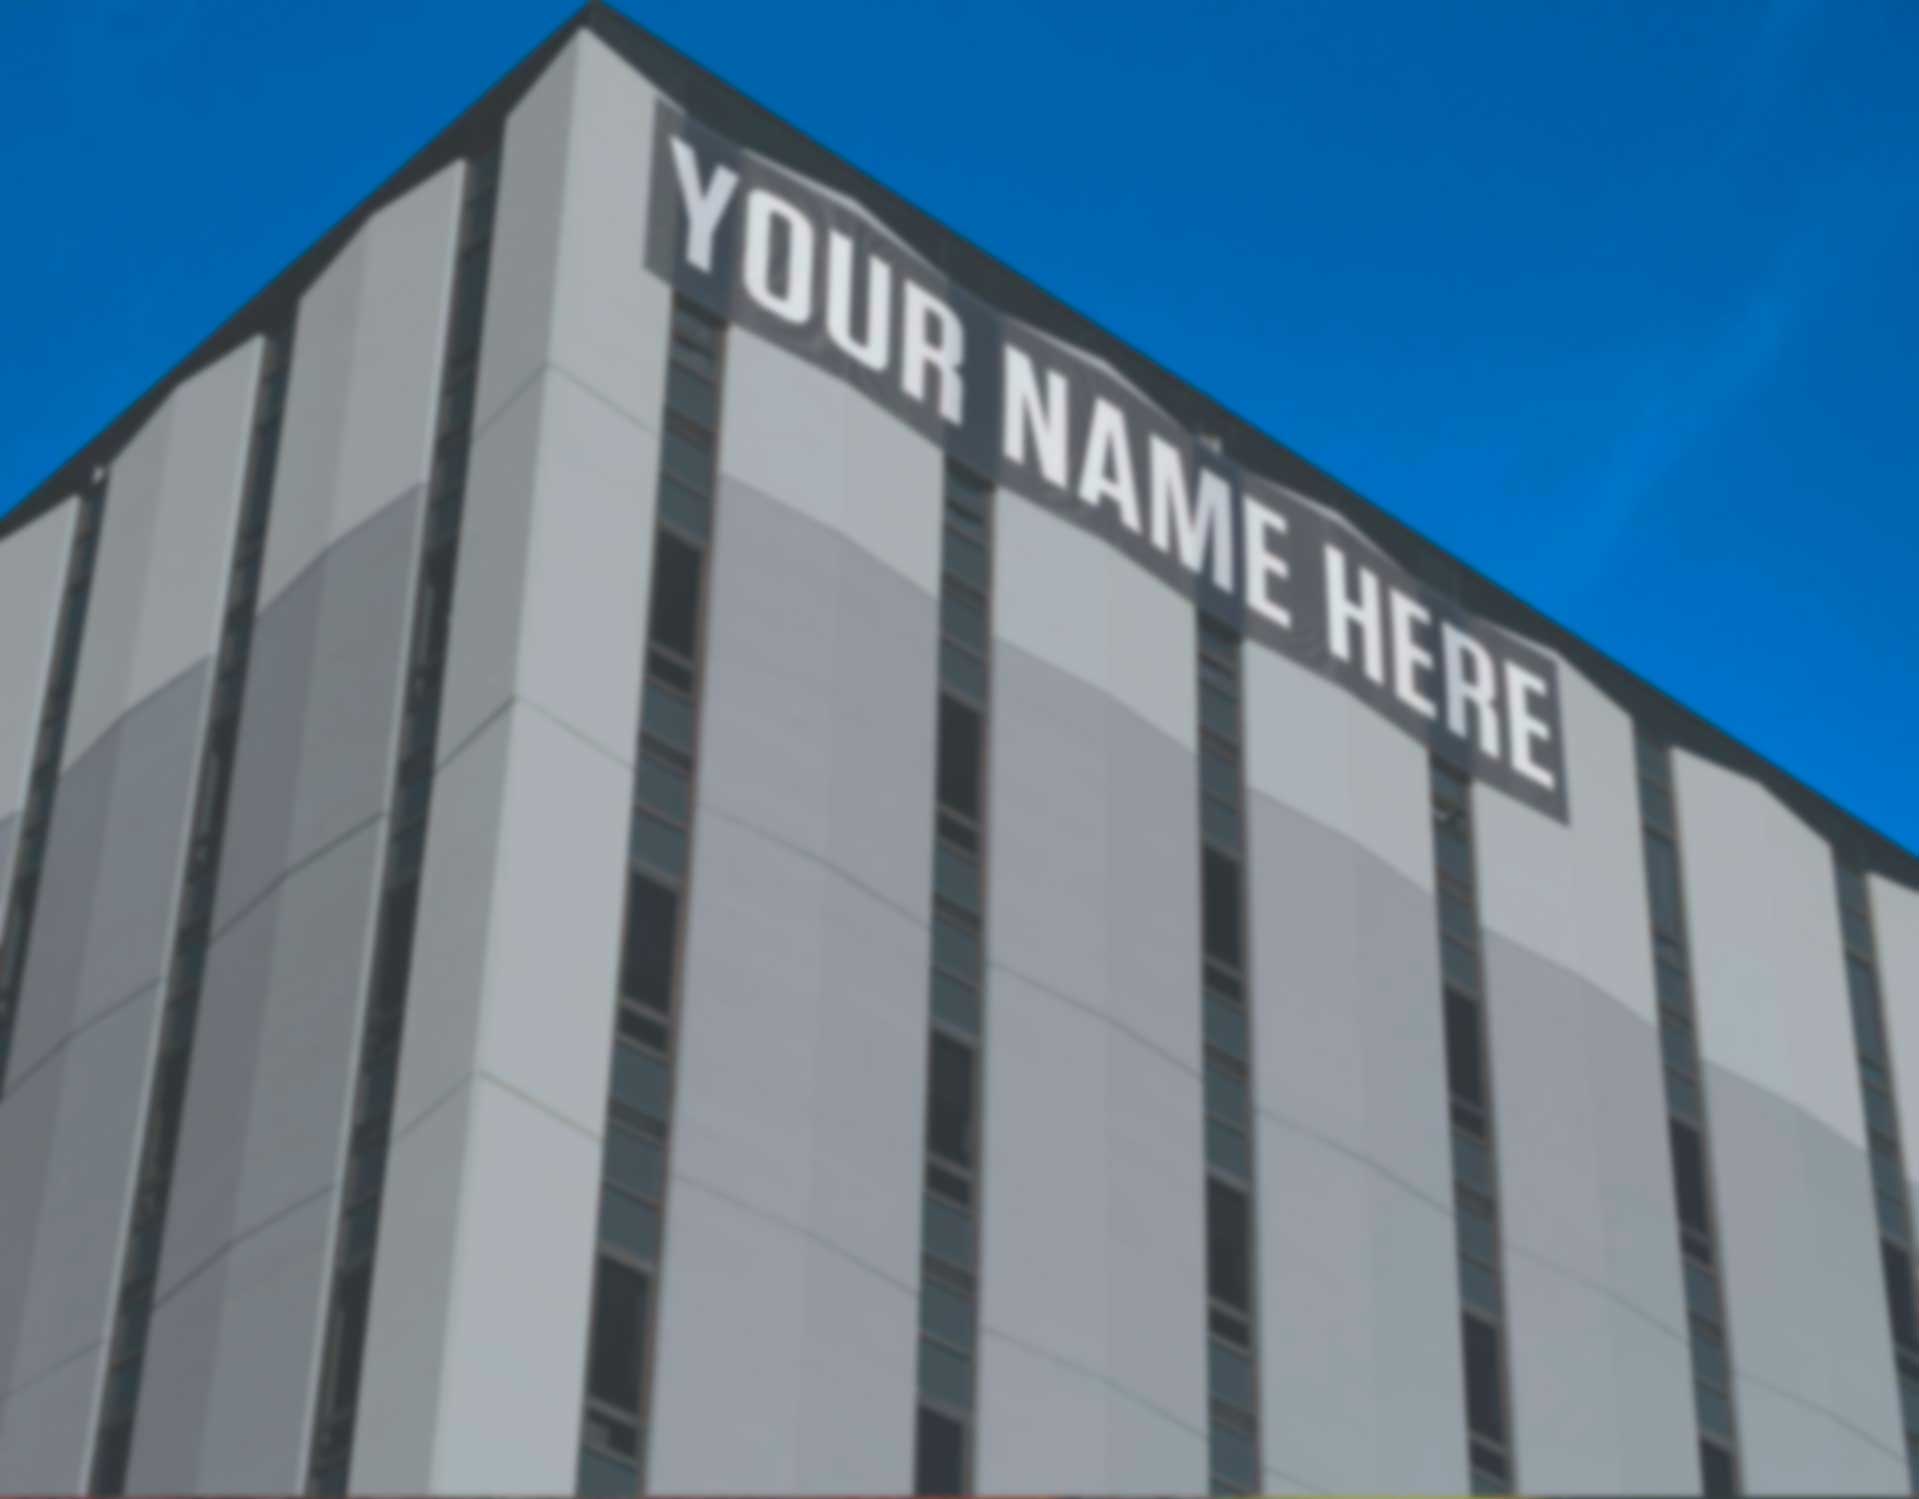 Gebäude mit Aufschrift your name here